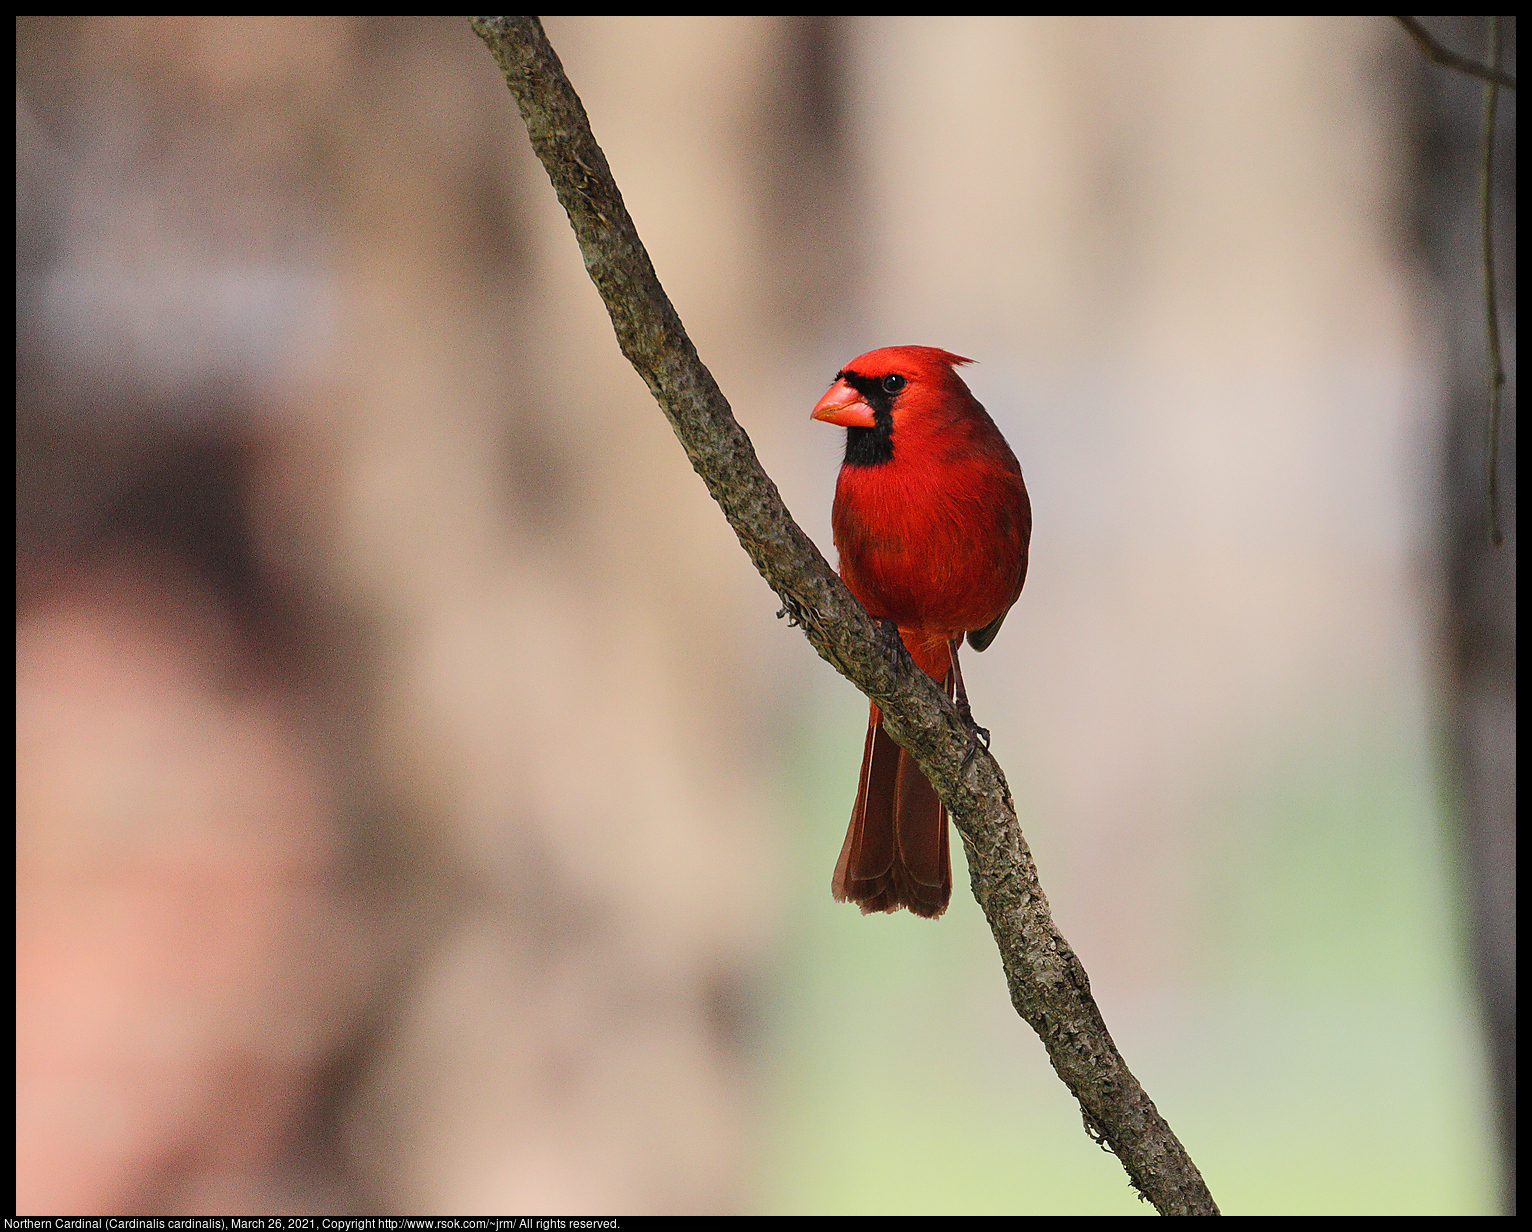 Northern Cardinal (Cardinalis cardinalis), March 26, 2021